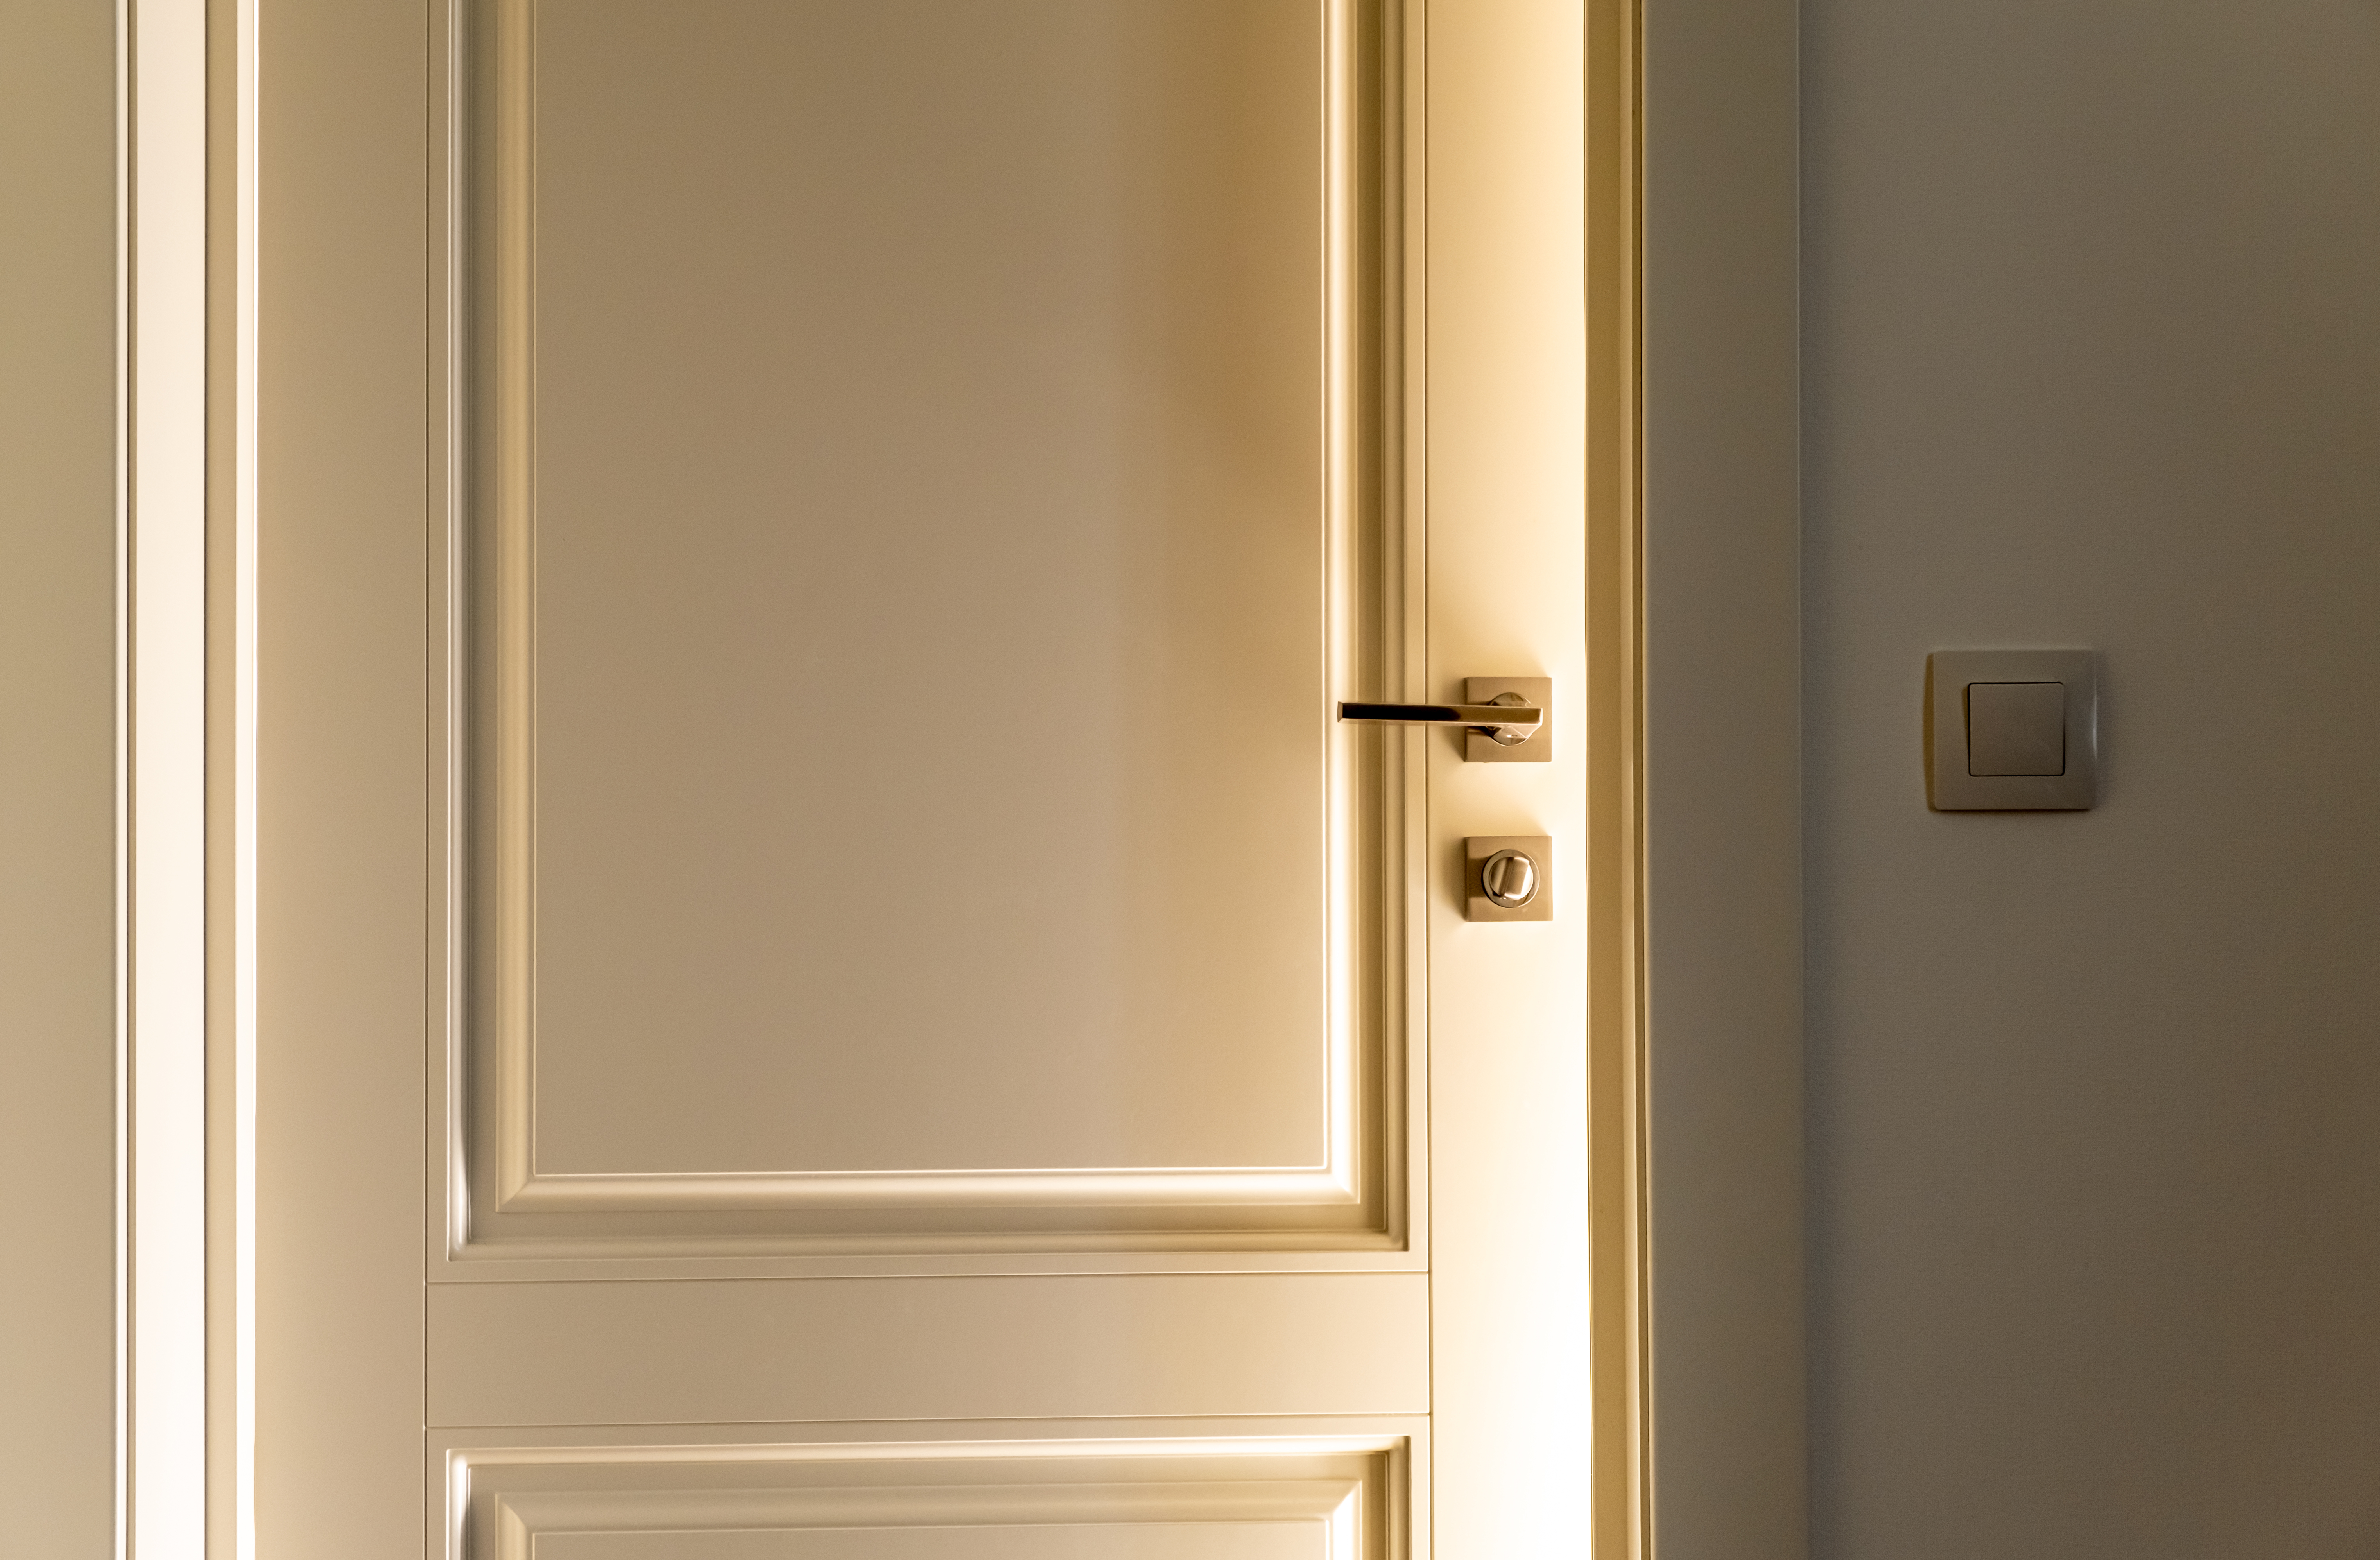 Helle Lichtstrahlen kommen durch einen Spalt in der Tür. | Quelle: Shutterstock